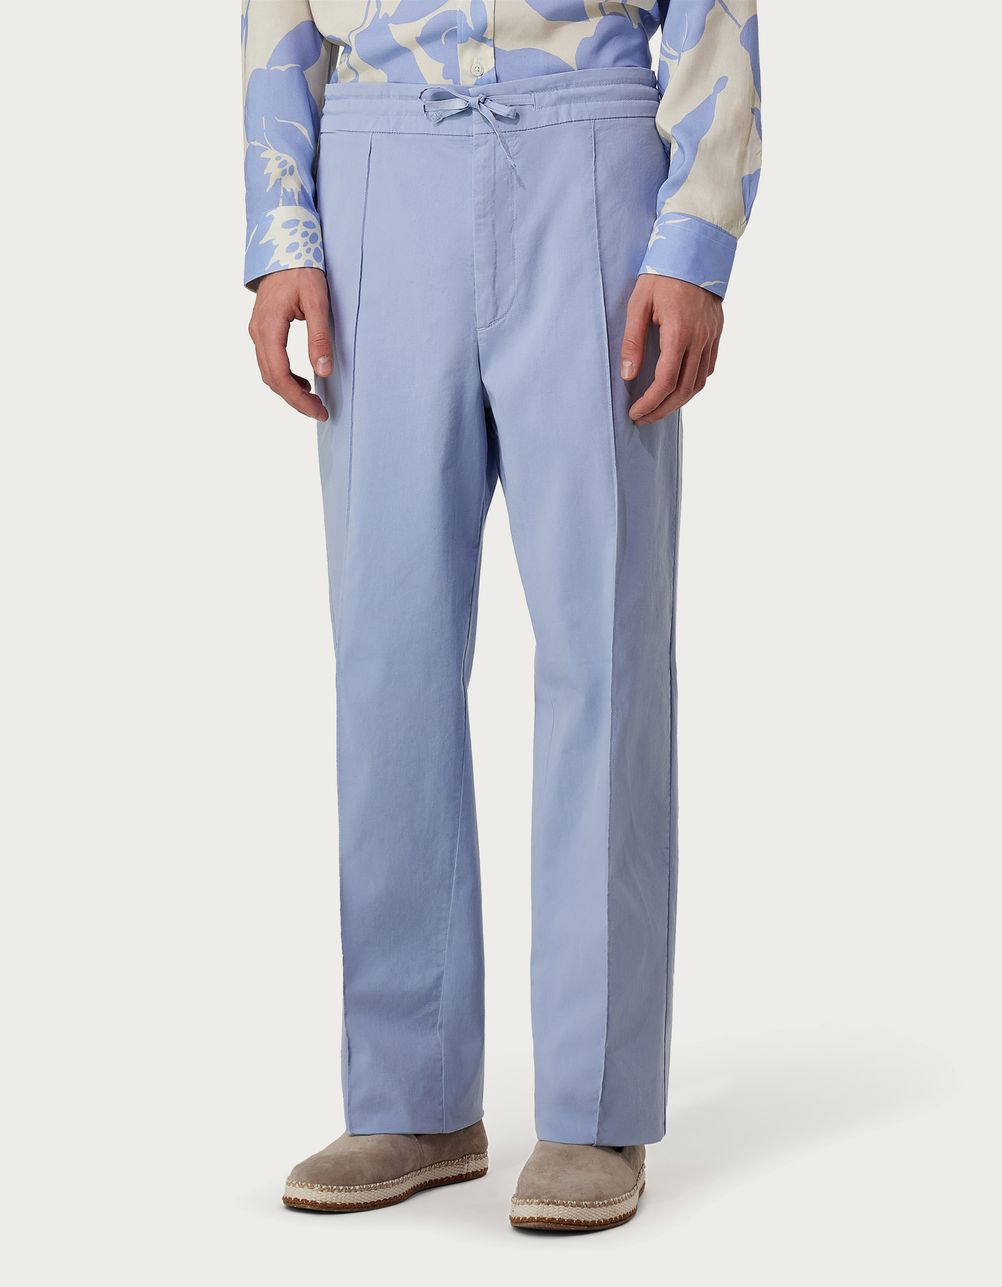 Pantalones chinos con cordón de ajuste de microsarga de algodón teñida en prenda color celeste